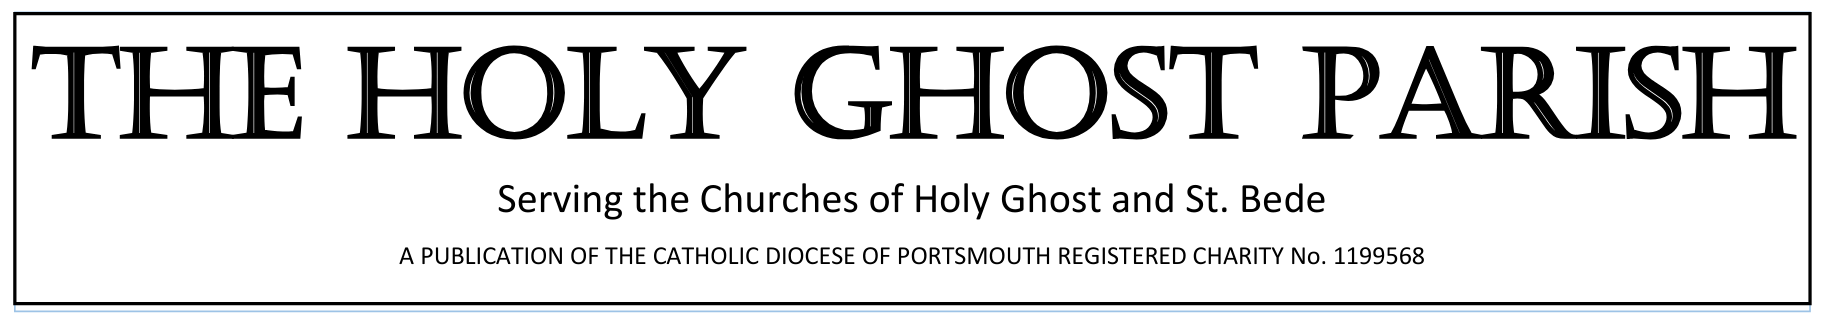 Holy Ghost parish newsletter header